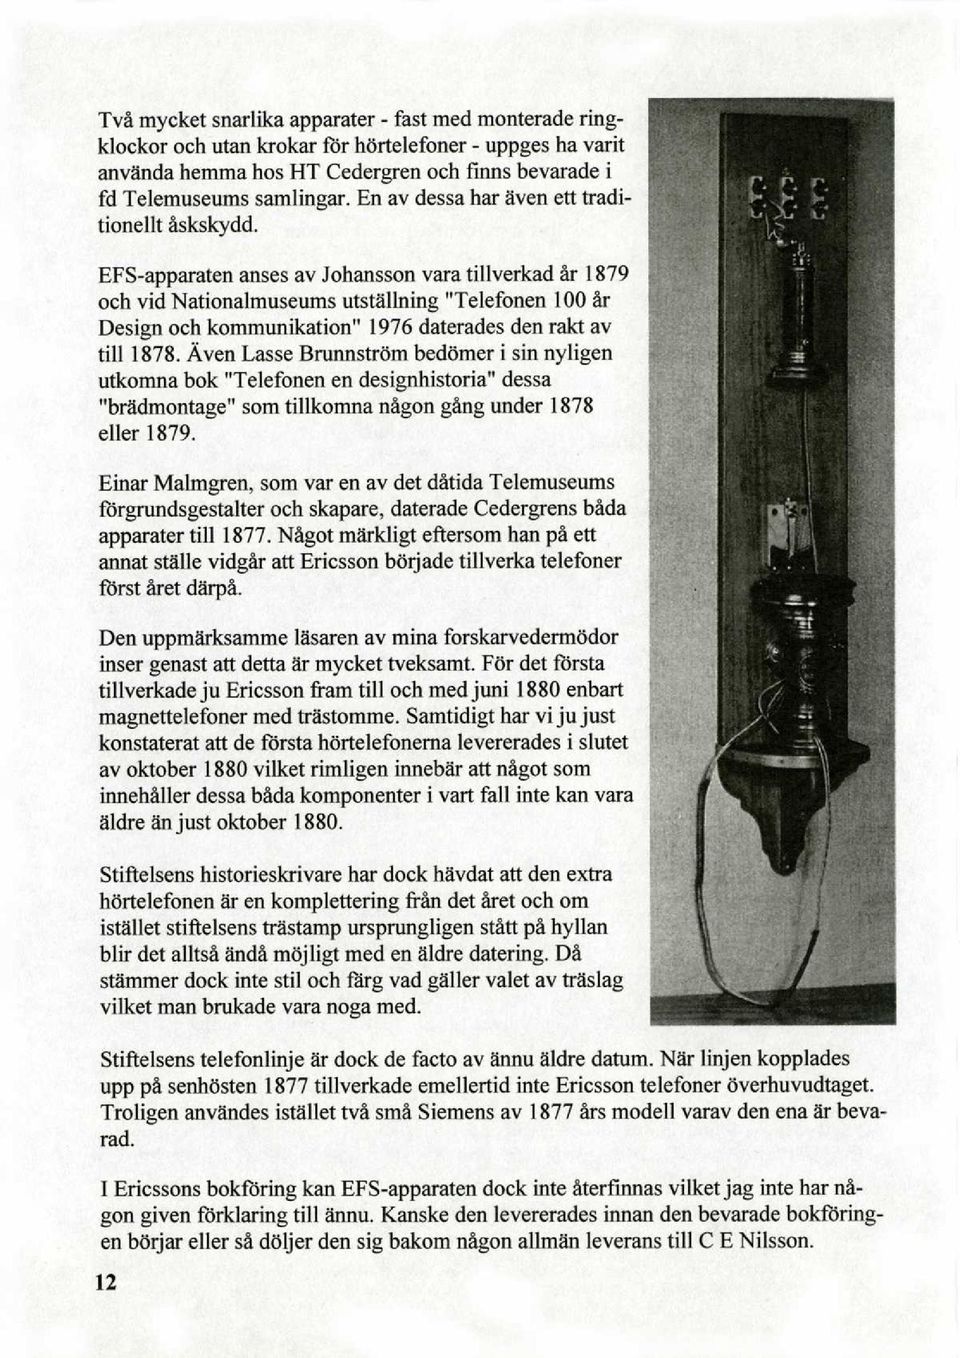 EFS-apparaten anses av Johansson vara tillverkad är 1879 och vid Nationalmuseums utställning "Telefonen 100 är Design och kommunikation" 1976 daterades den rakt av till 1878.